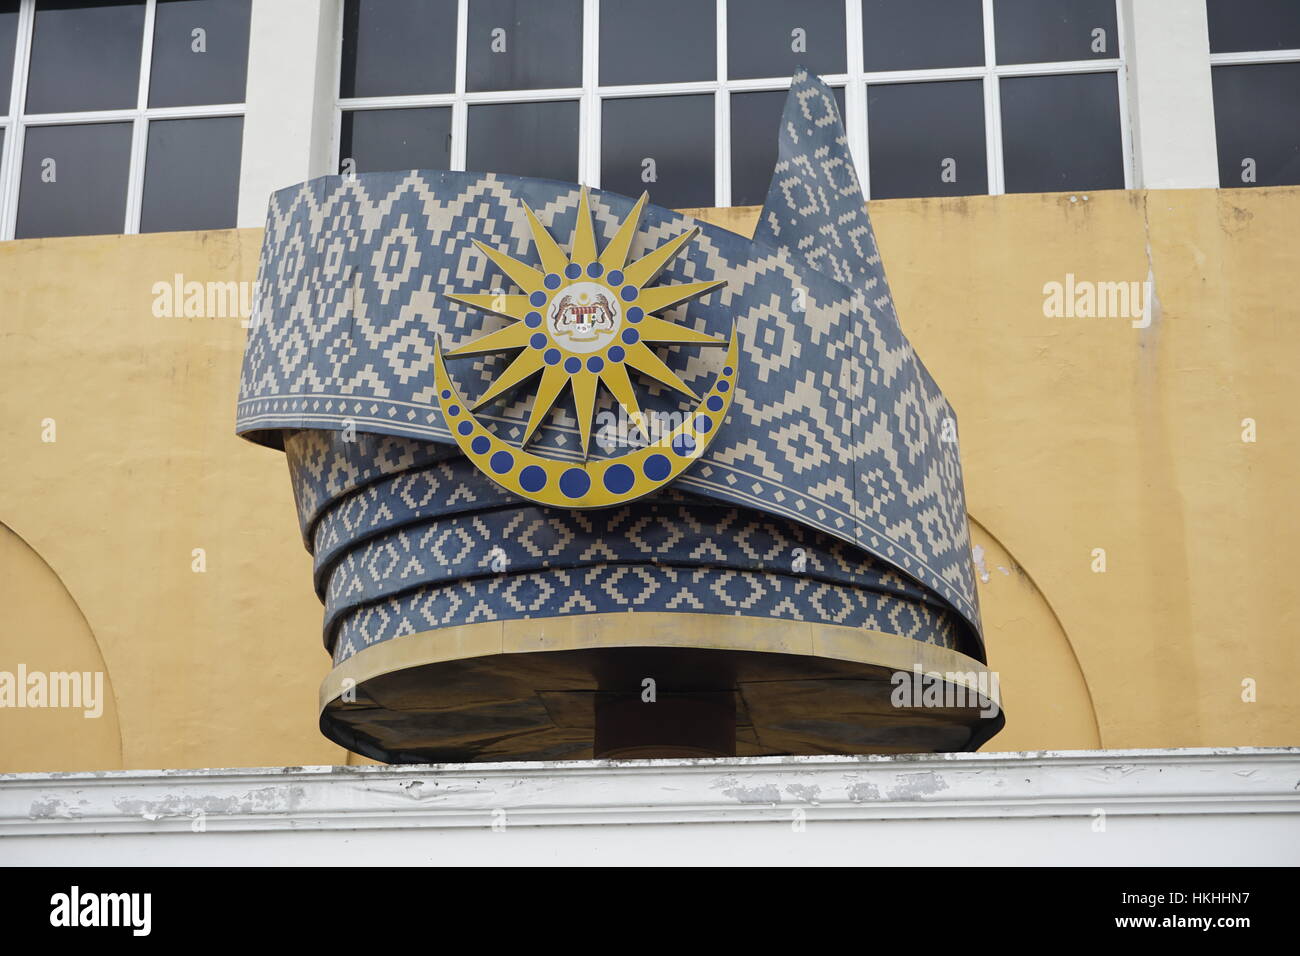 Réplica de tengkolok, un macho malaya tradicional casco, con emblema nacional de Malasia Foto de stock